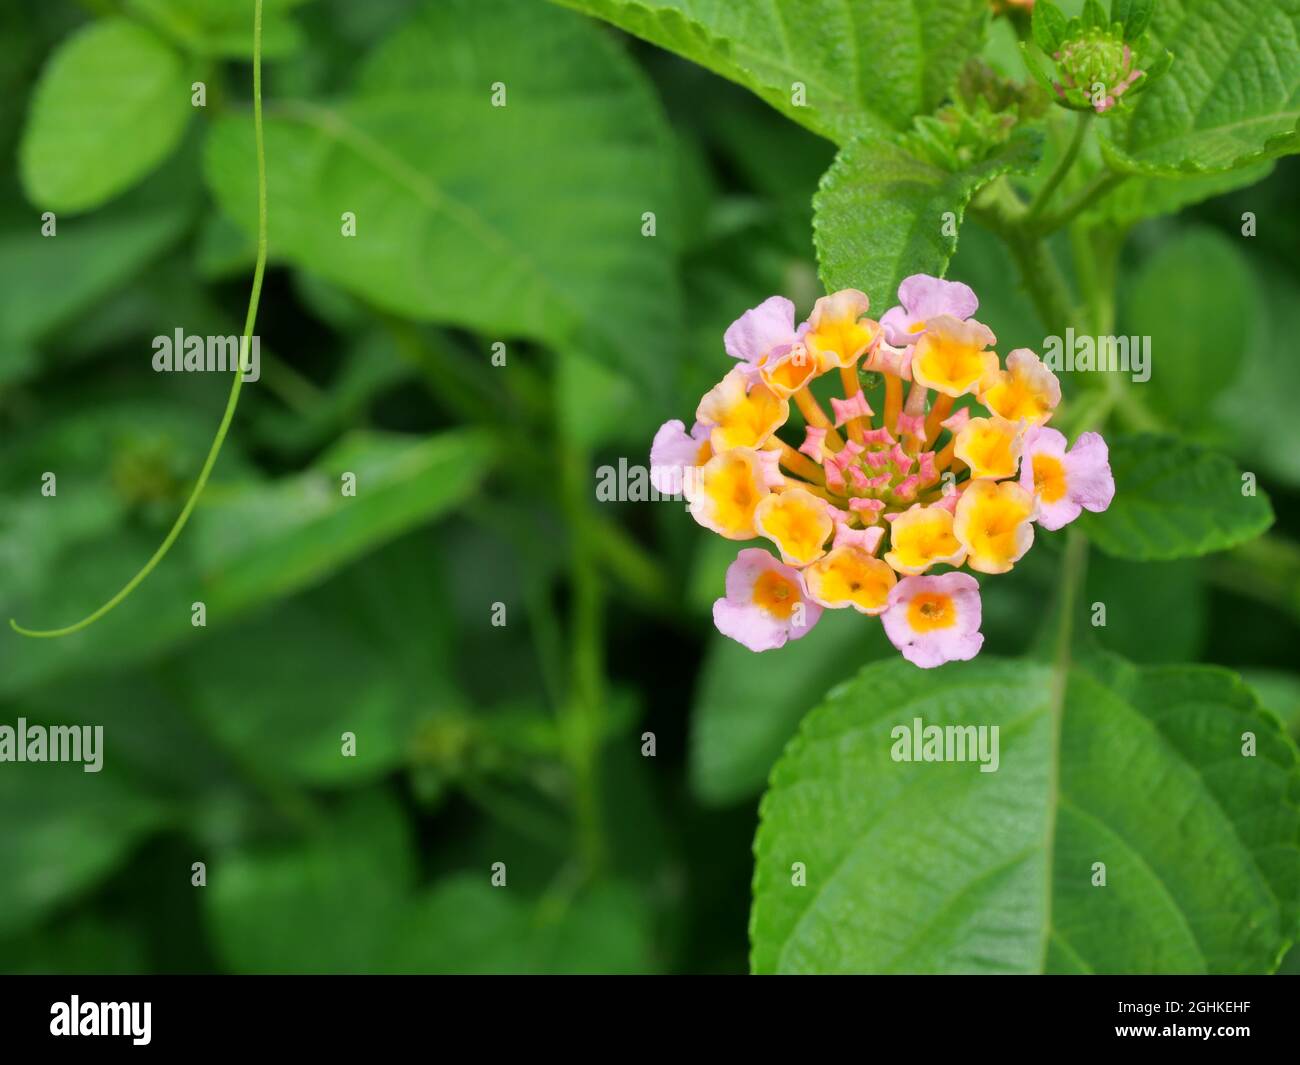 West Indian Lantana Blossom ( Lantana camara ) avec fond vert naturel, Groupe de petites fleurs avec pétales roses et pollen jaune Banque D'Images